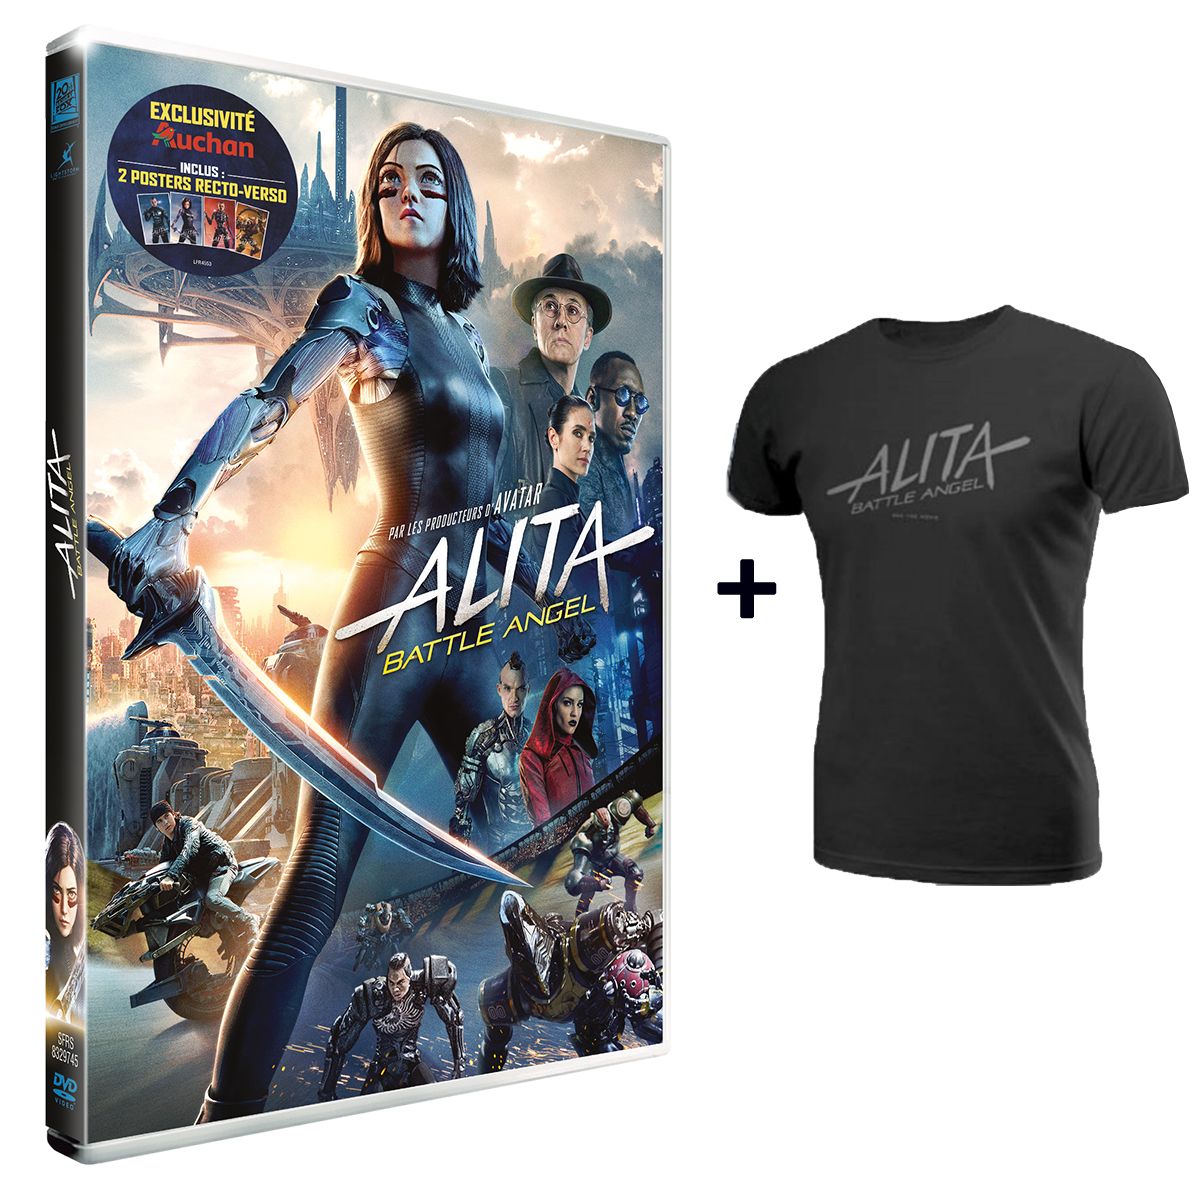 Alita : Battle Angel DVD Exclusivité Auchan + T-shirt offert pas cher -  